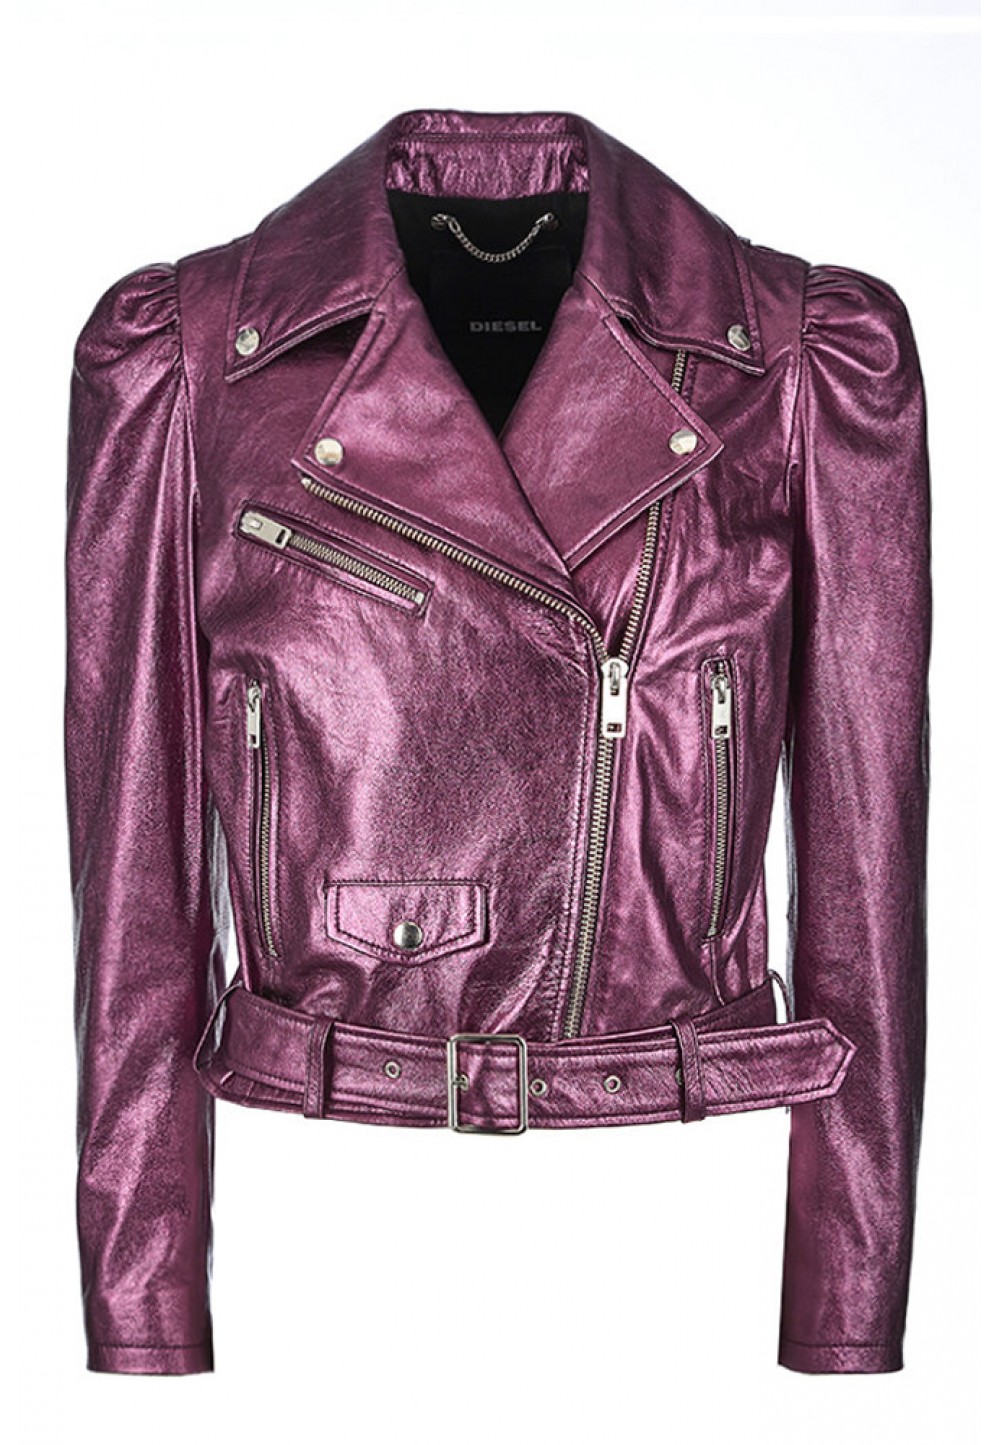 Фиолетовая кожаная куртка косуха